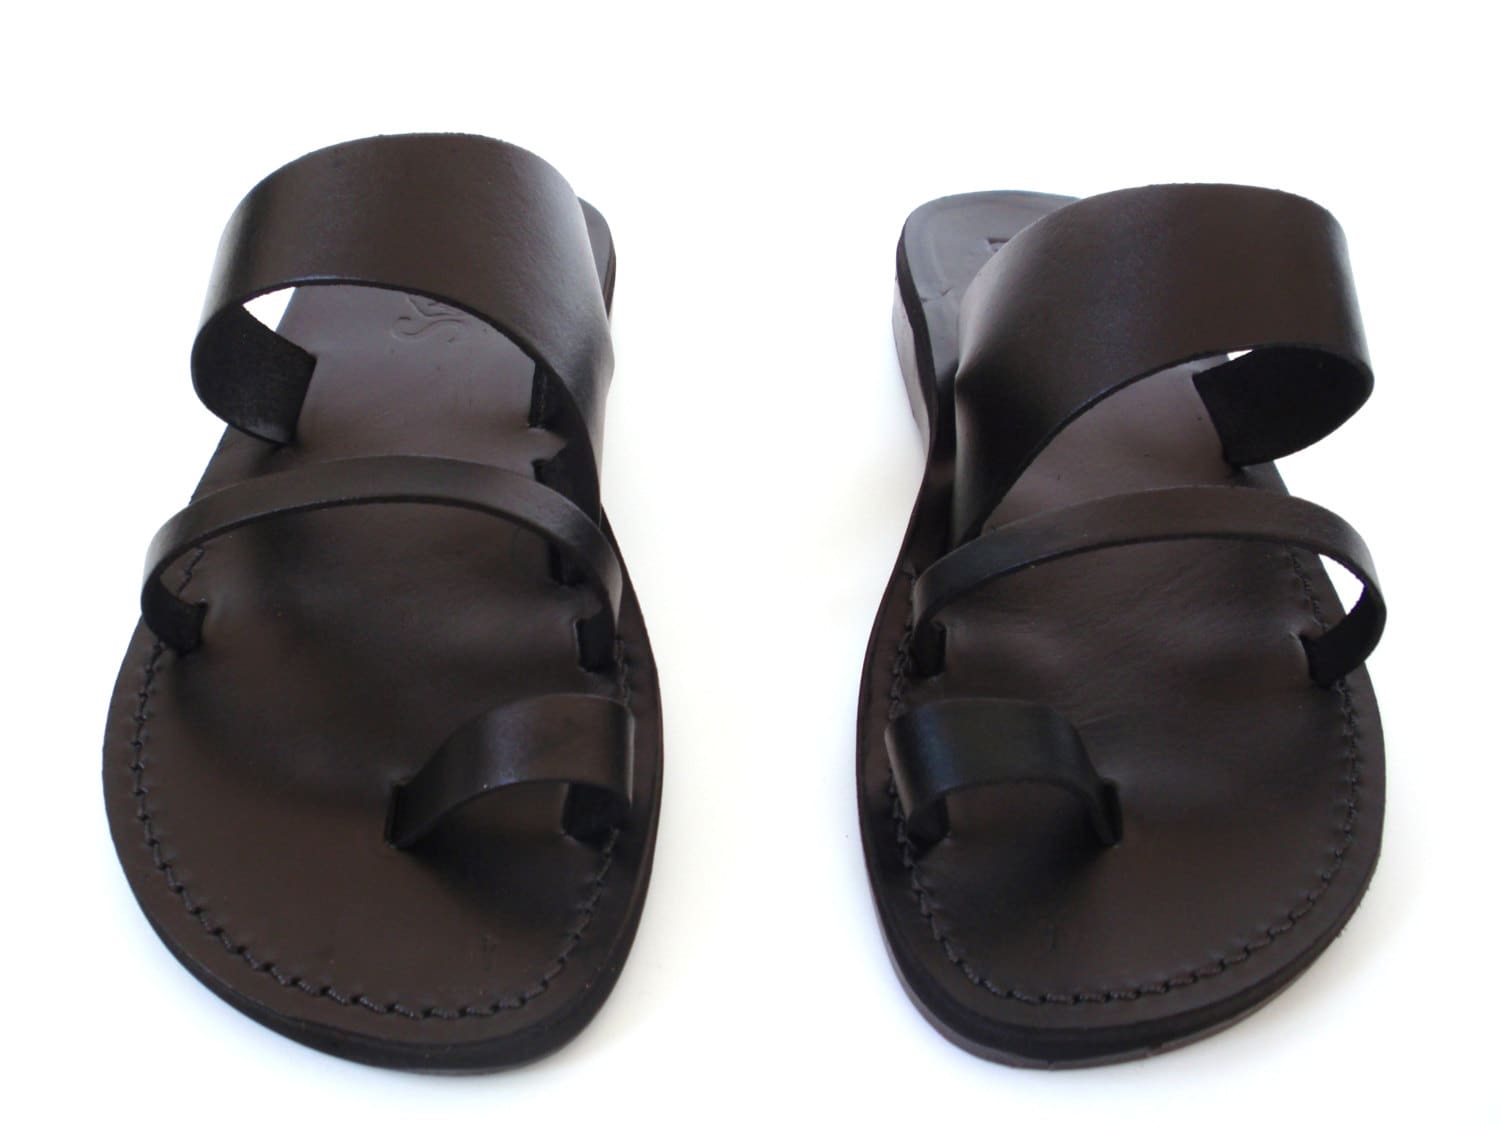 SALE New Leather Sandals TRIPLE Men's Shoes by Sandalimshop